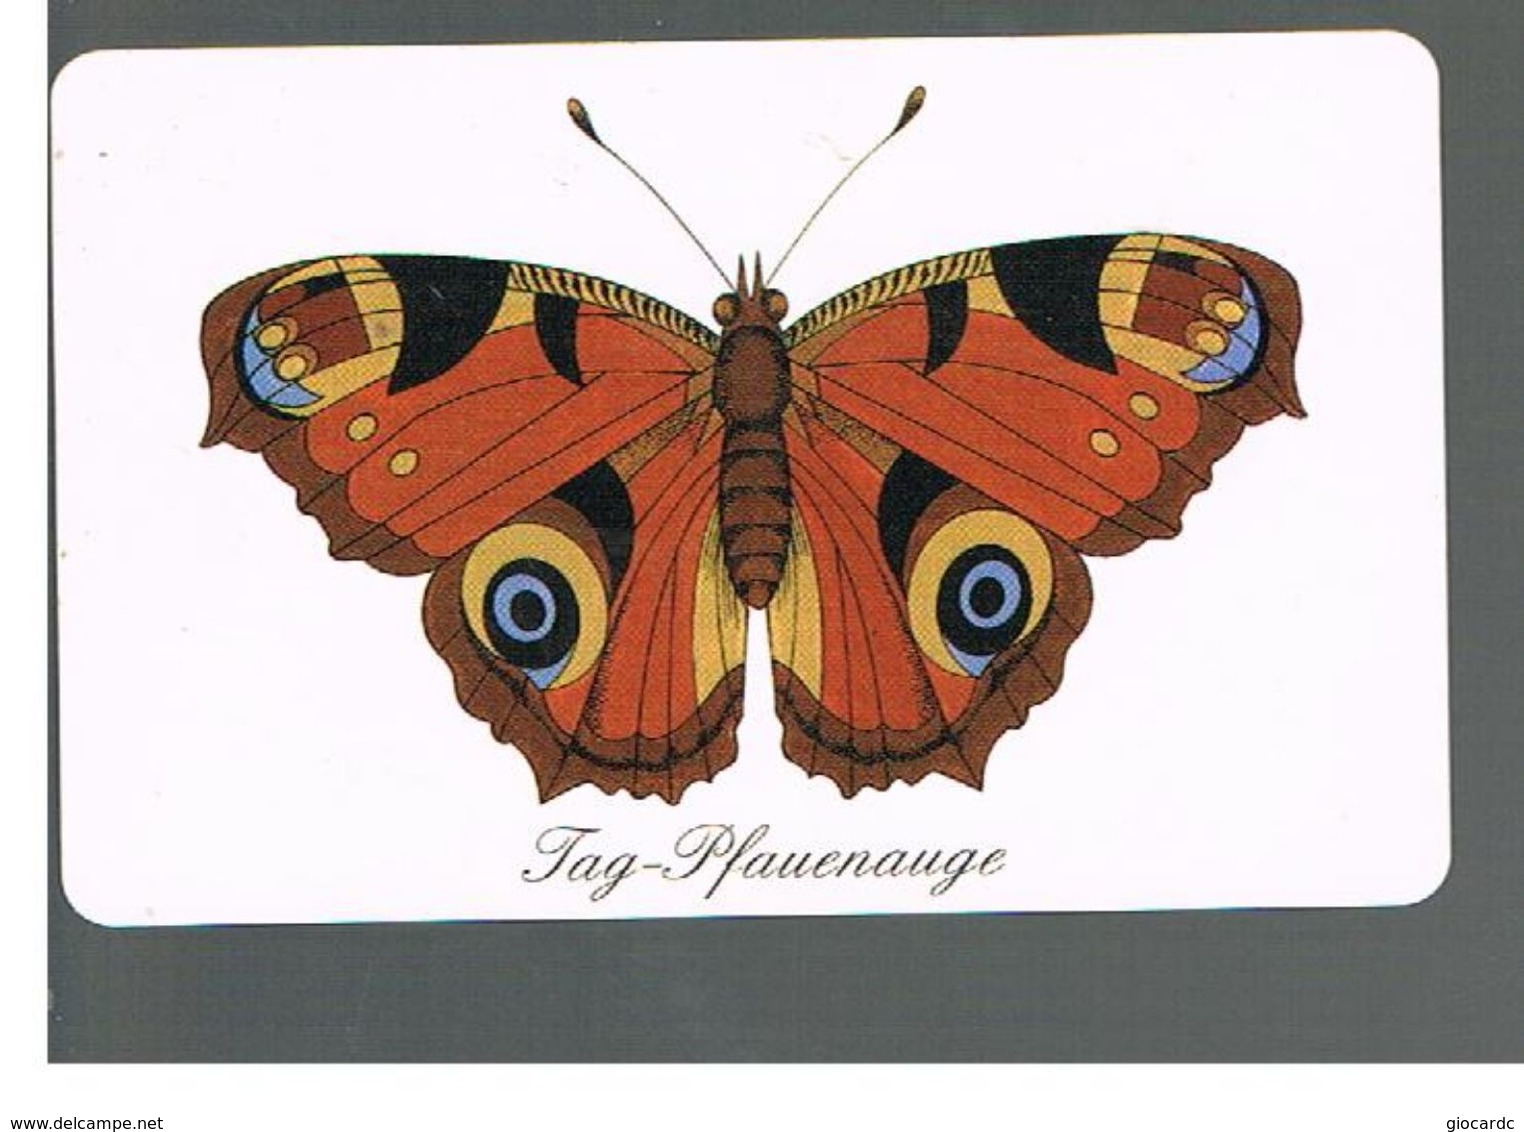 GERMANIA (GERMANY) -  1998 -  BUTTERFLIES   - RIF.   138 - Butterflies